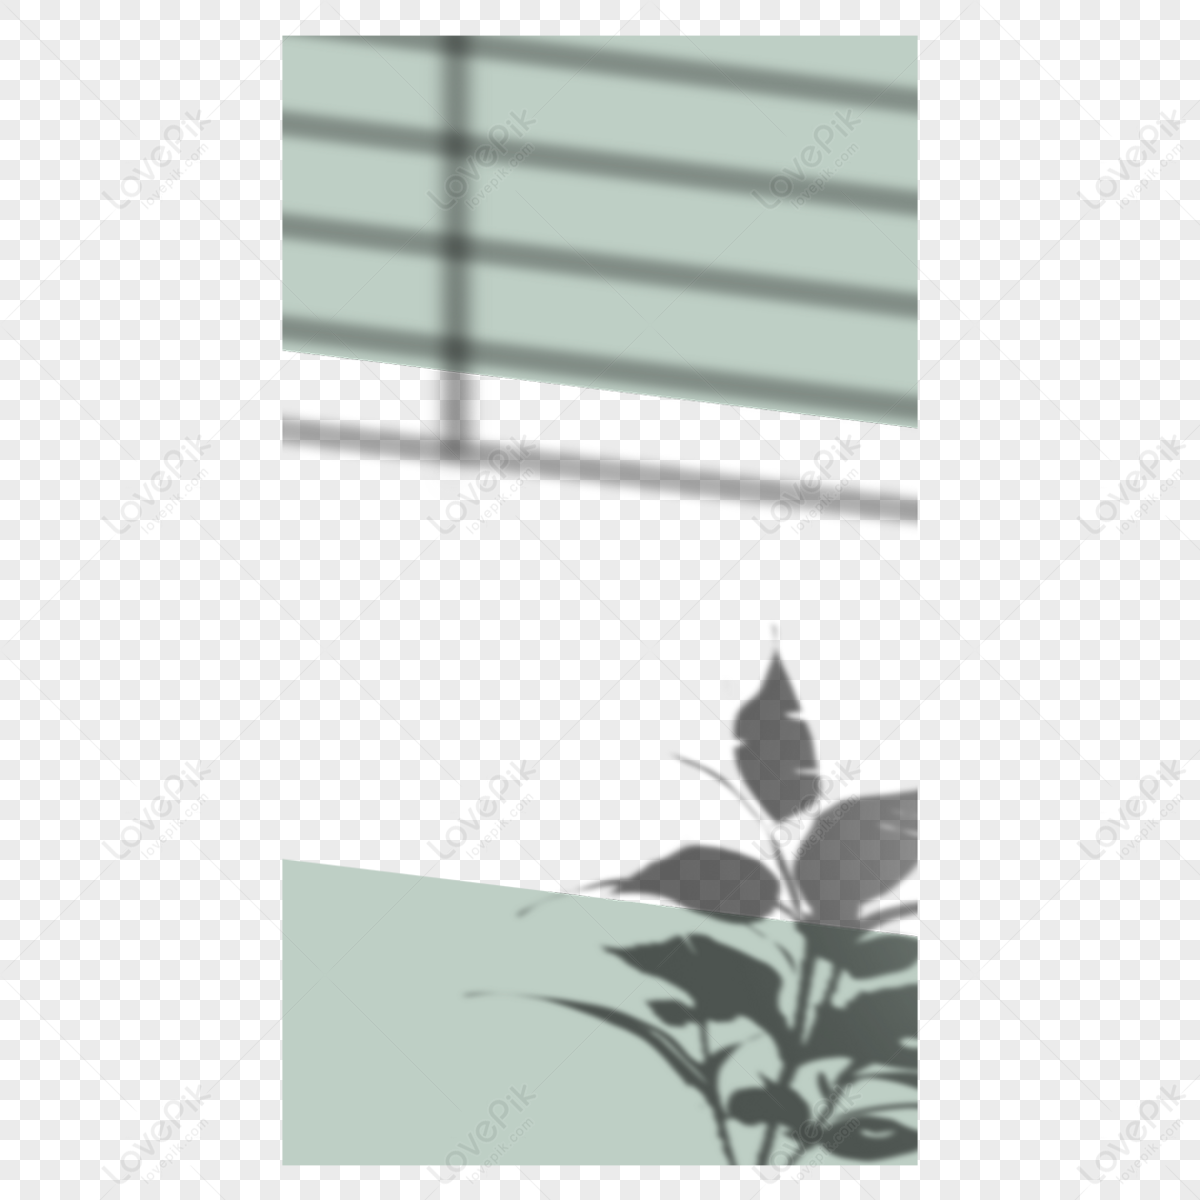 Summer leaves shadow overlay instagram border green nature,frame,stamen png transparent image